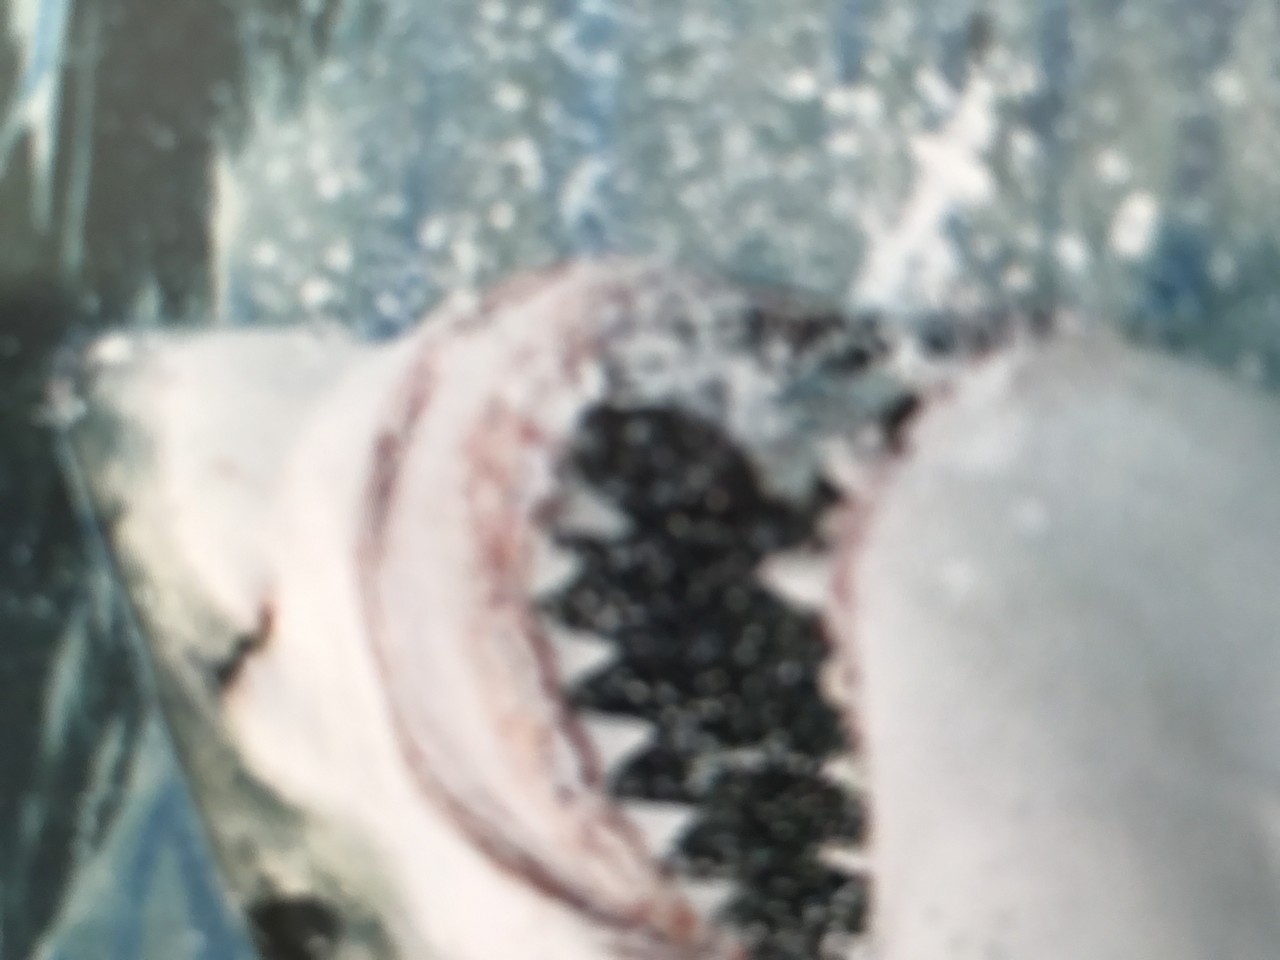 a shark's face with teeth